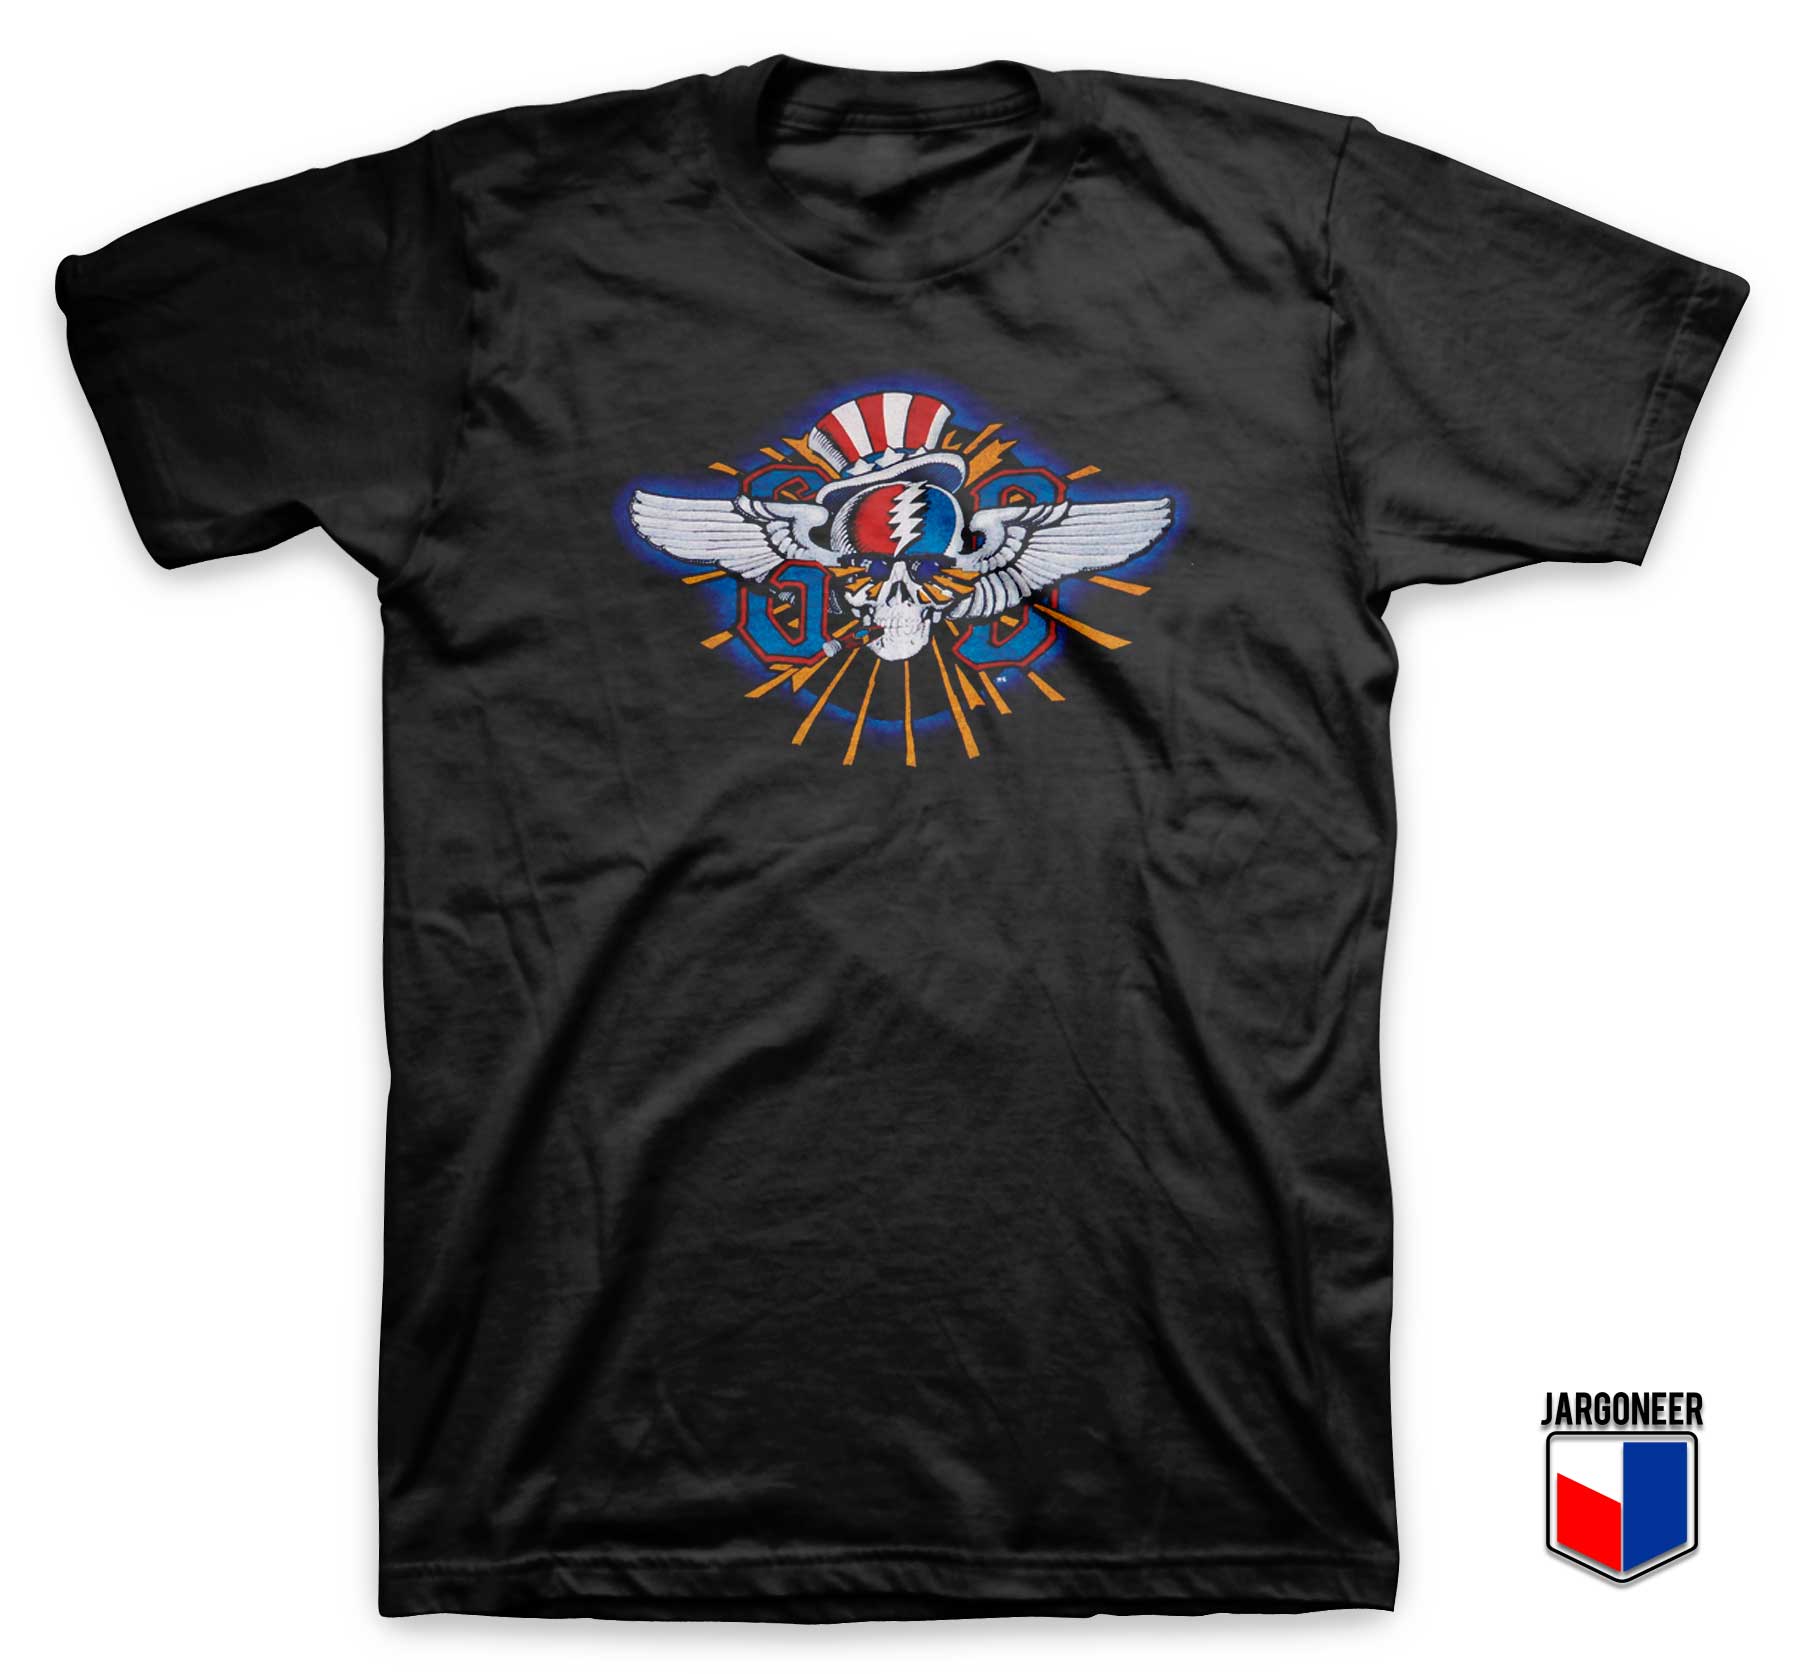 Grateful Dead Vintage Tour T Shirt - Shop Unique Graphic Cool Shirt Designs